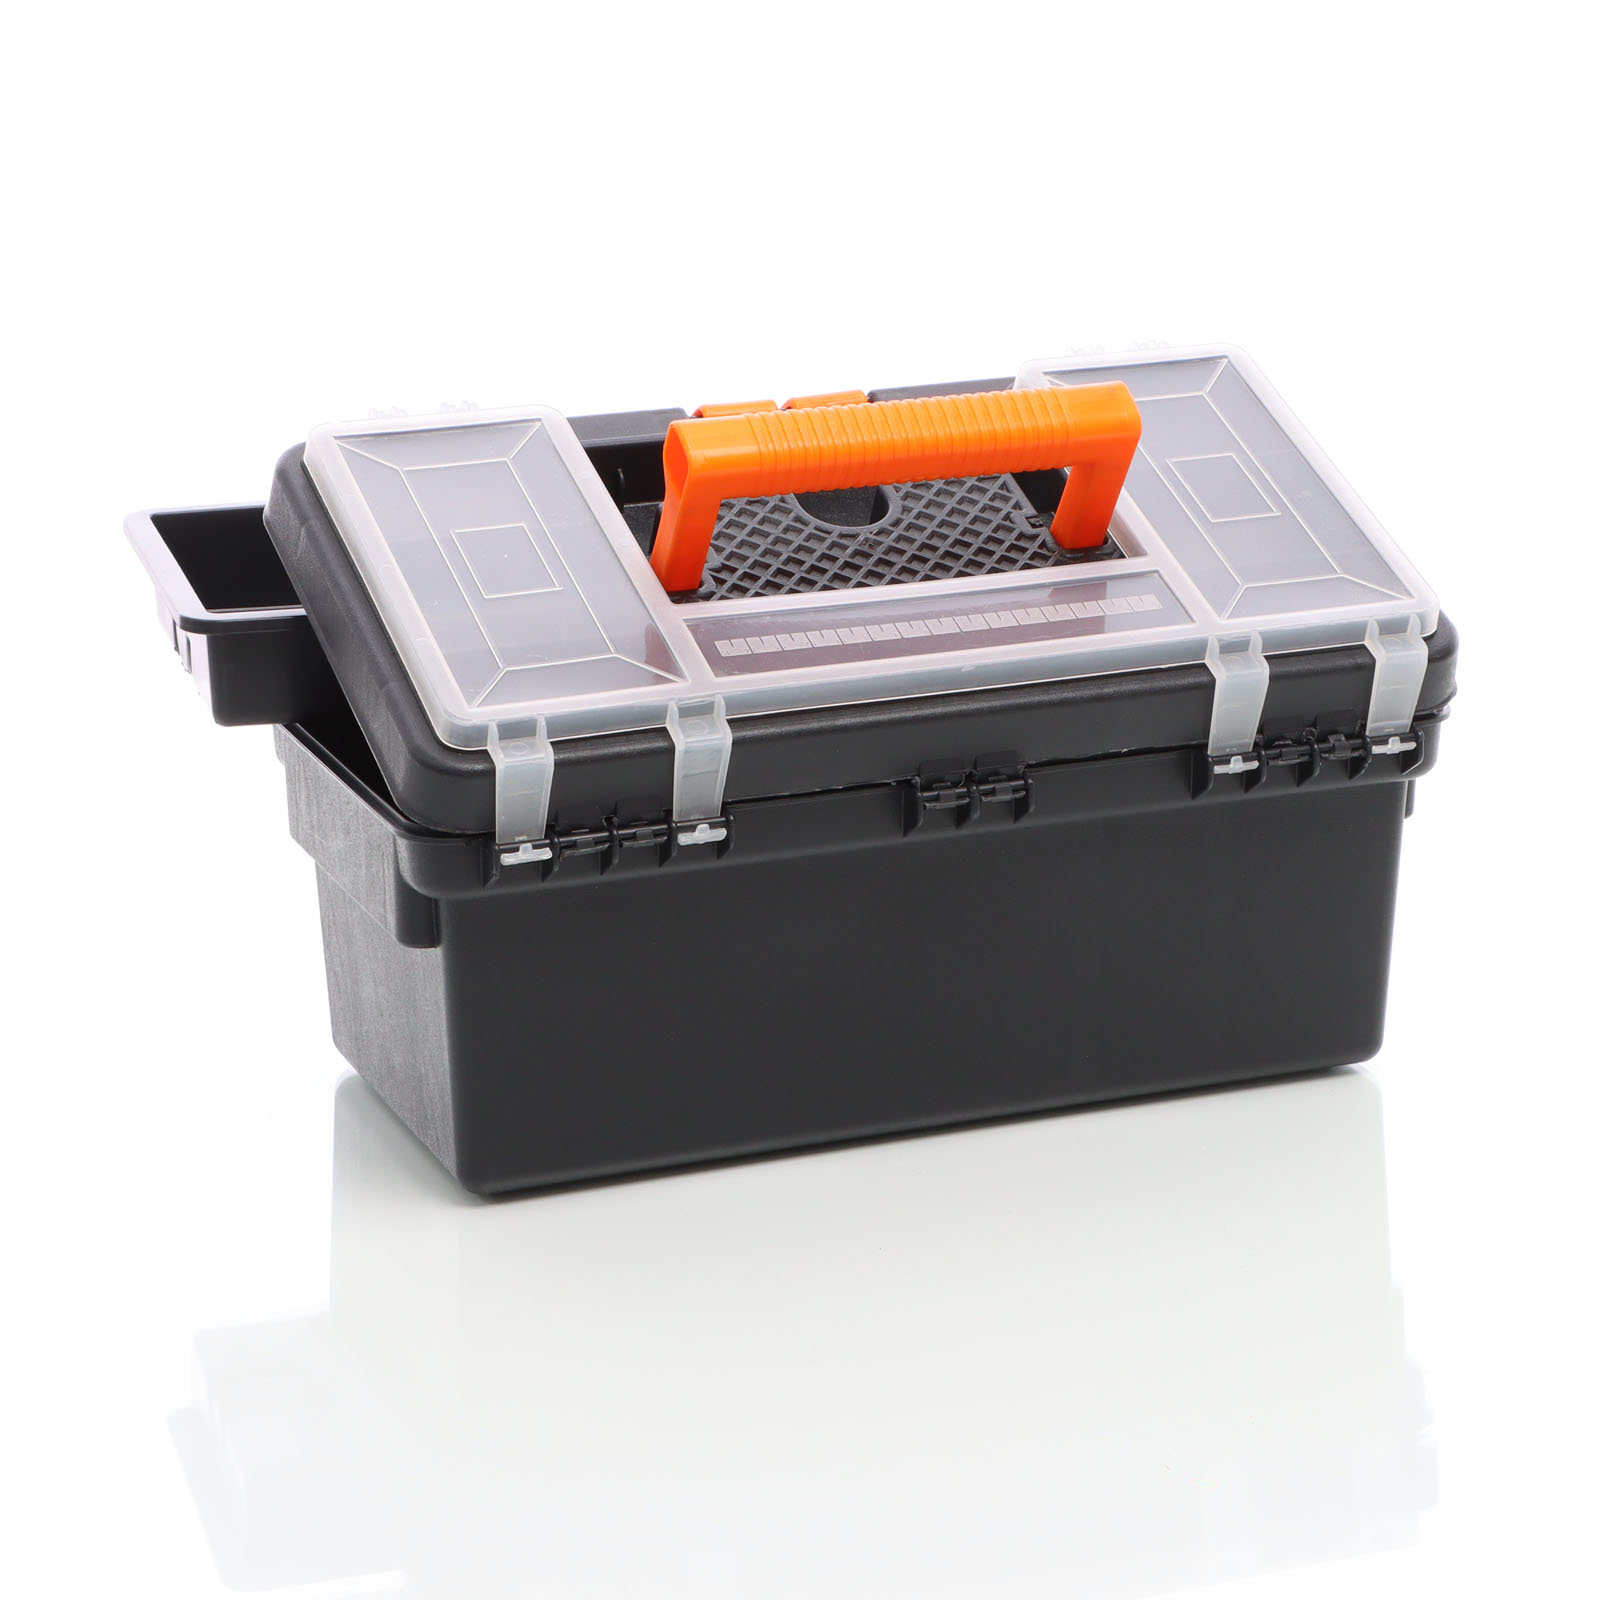 XPOtool Caja de herramientas vacía 36x16x19cm plástico maleta organizador y  2 compartimentos extras